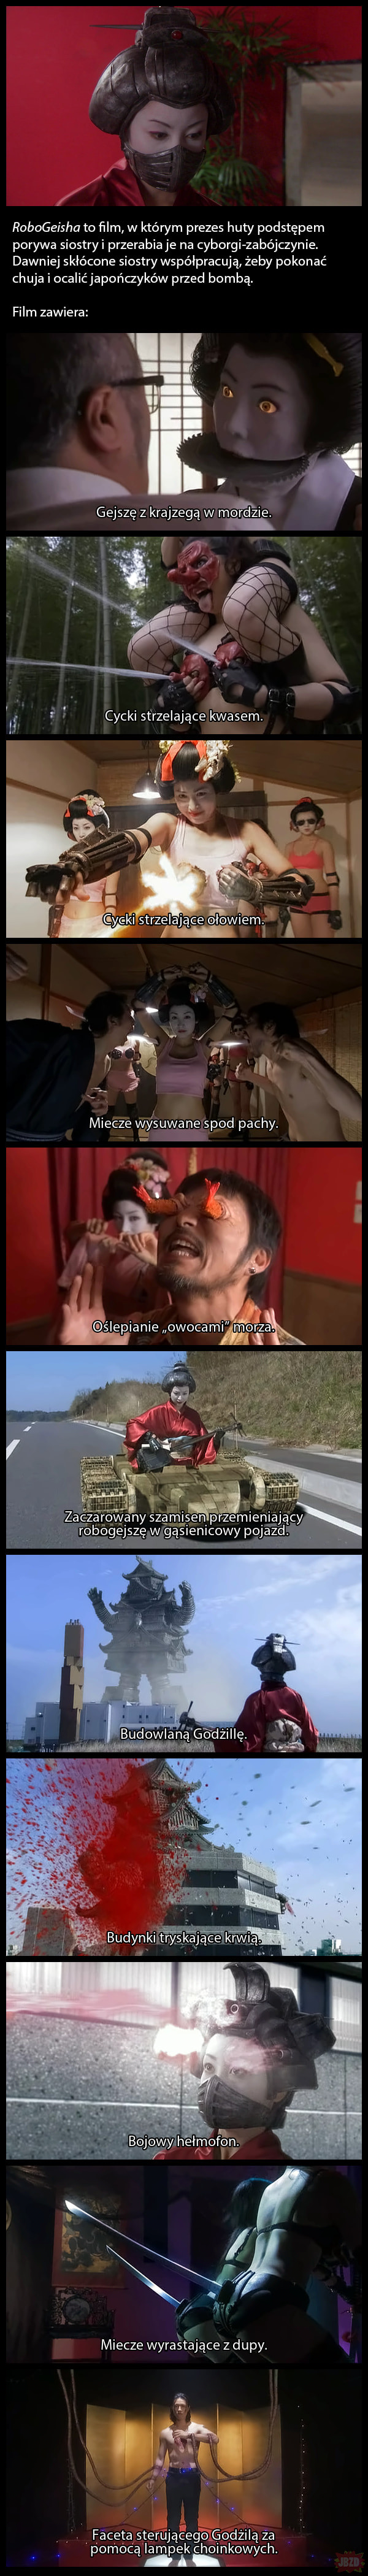 Śmieszne filmy odc. 67 – RoboGeisha (2009).